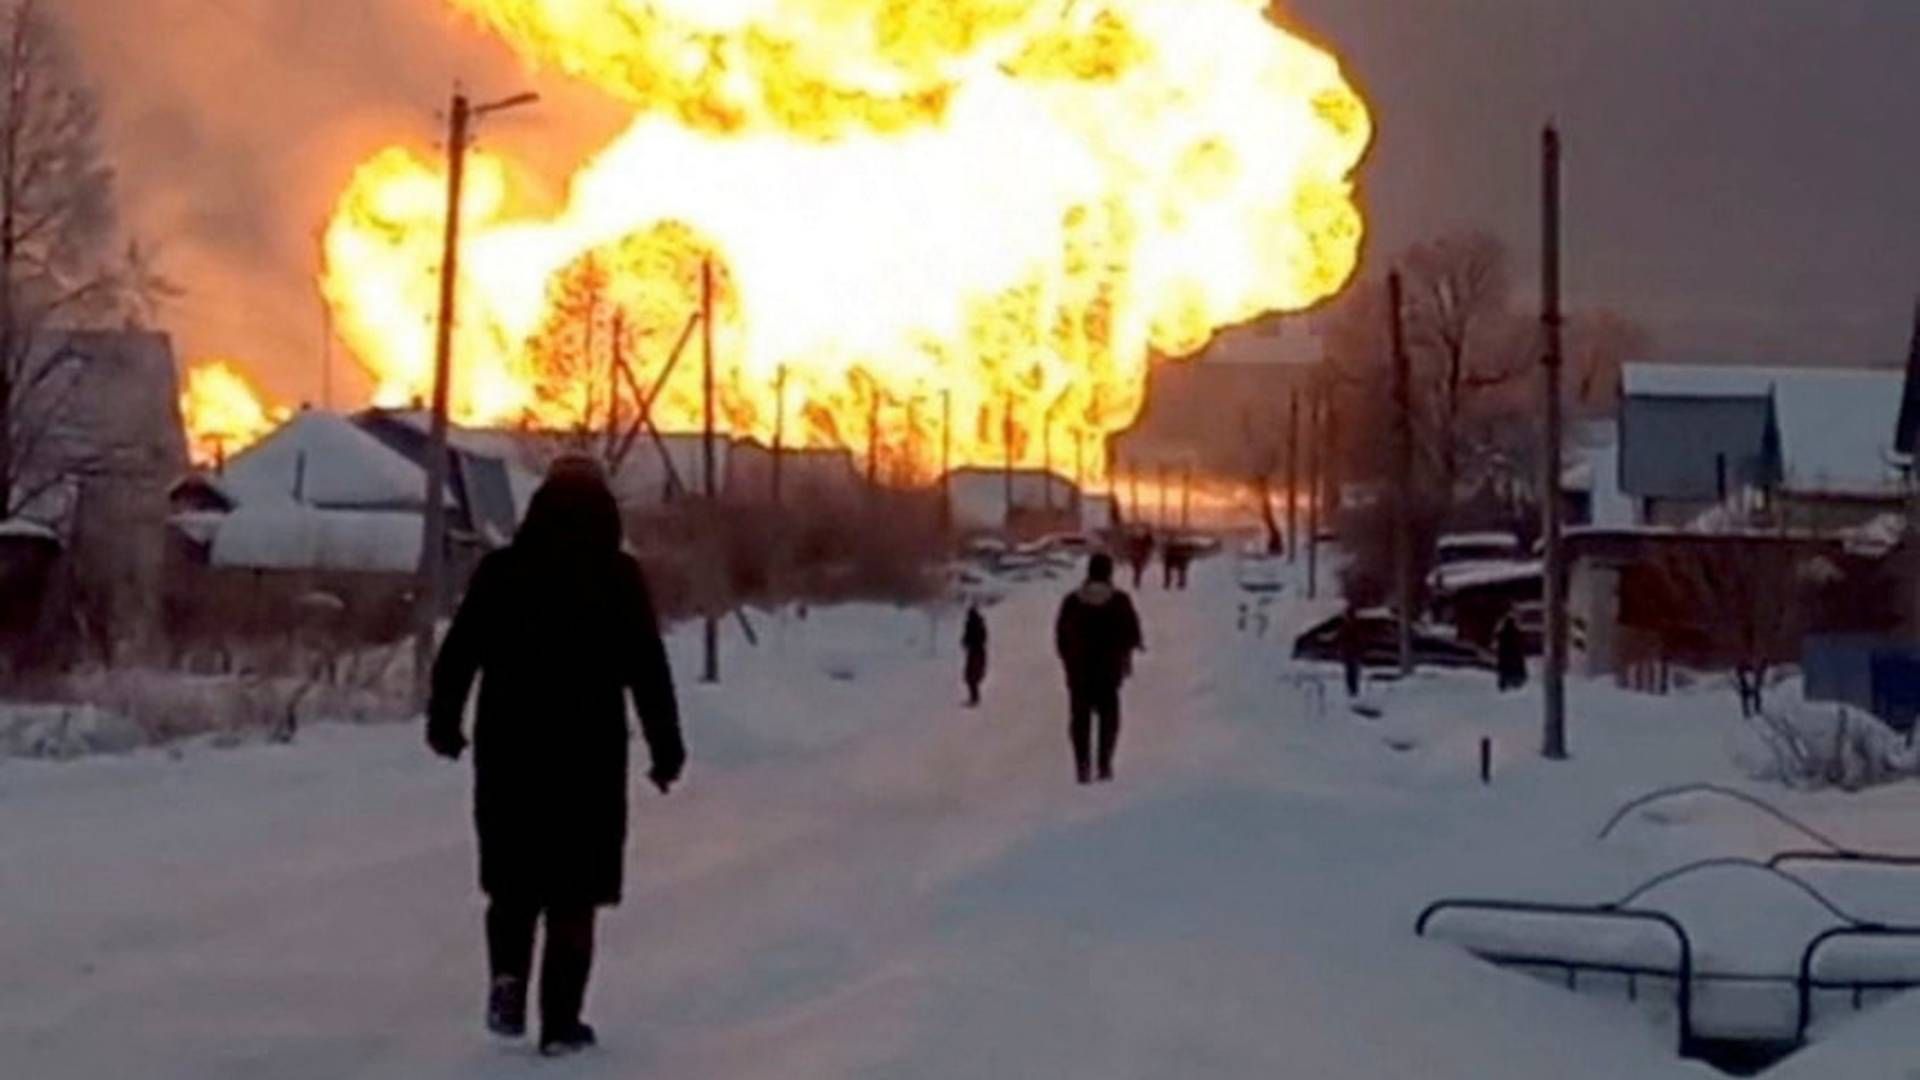 Et foto taget fra sociale medier viser den eksplosionsagtige brand, der tirsdag ramte en gasrørledning i det vestlige Rusland. | Foto: TELEGRAM/PRO GOROD 21 CHUVASH/via REUTERS / X04130